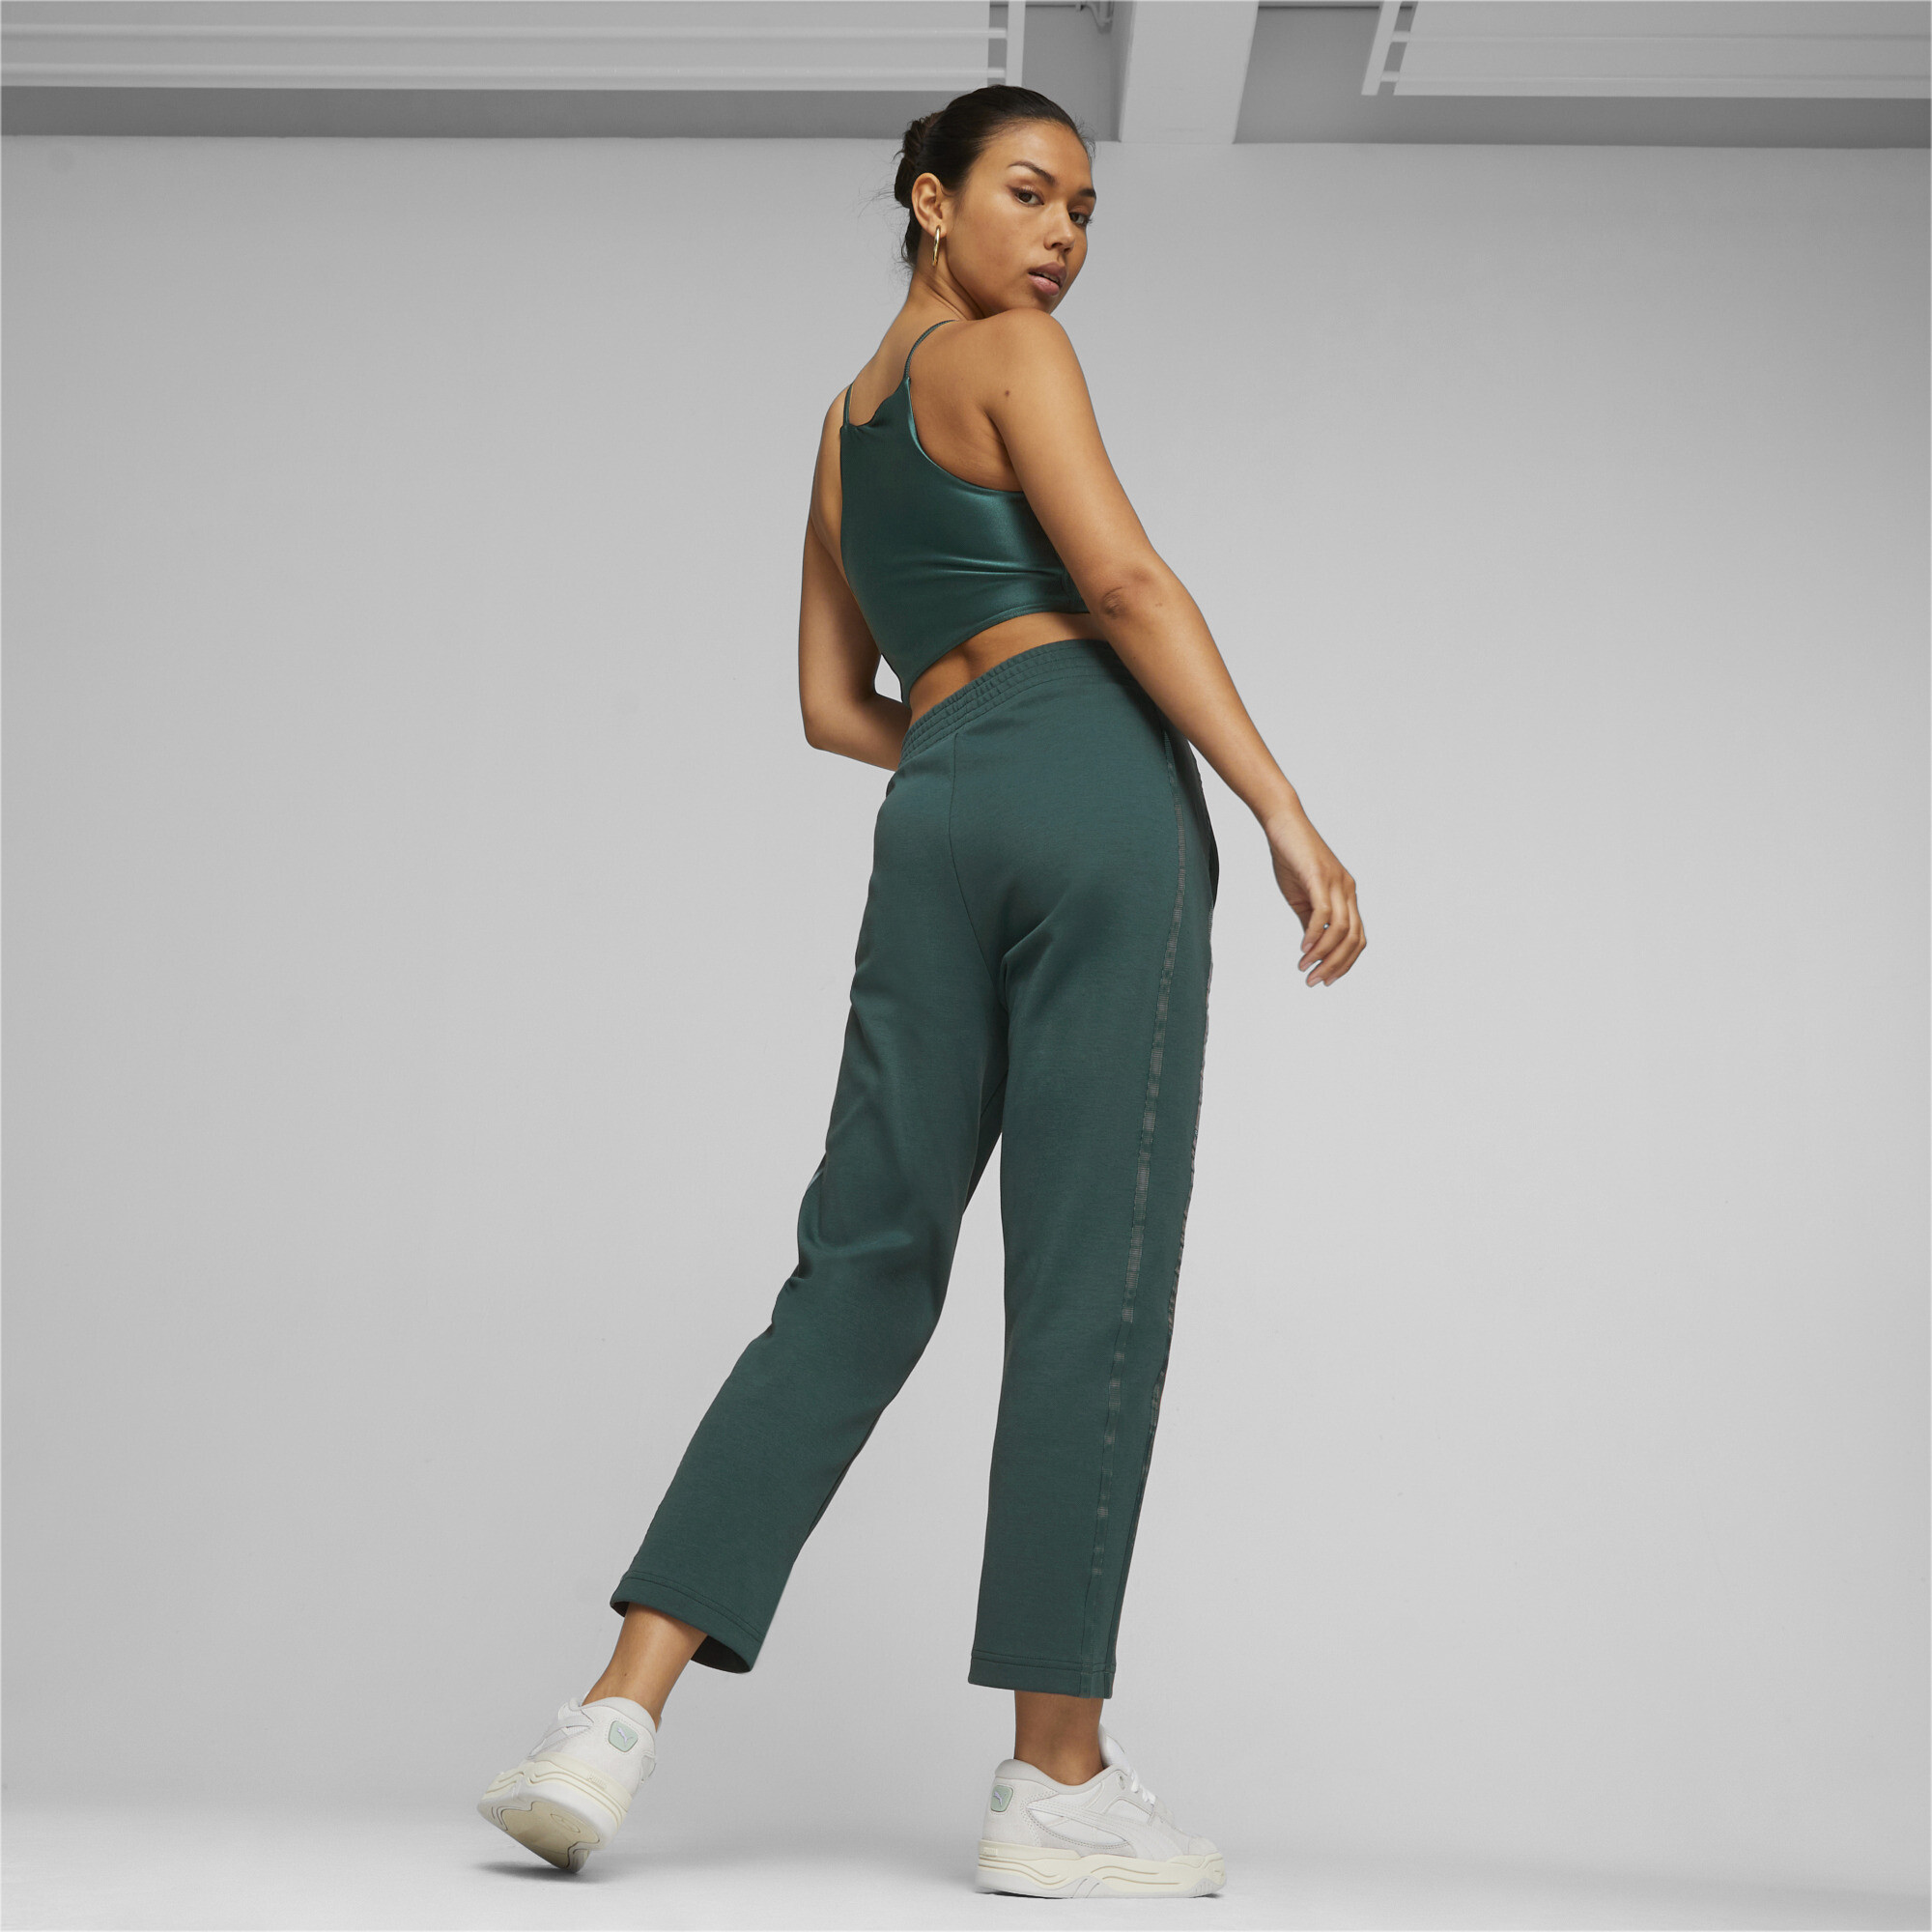 Women's PUMA T7 High Waist Pants In 40 - Green, Size Medium